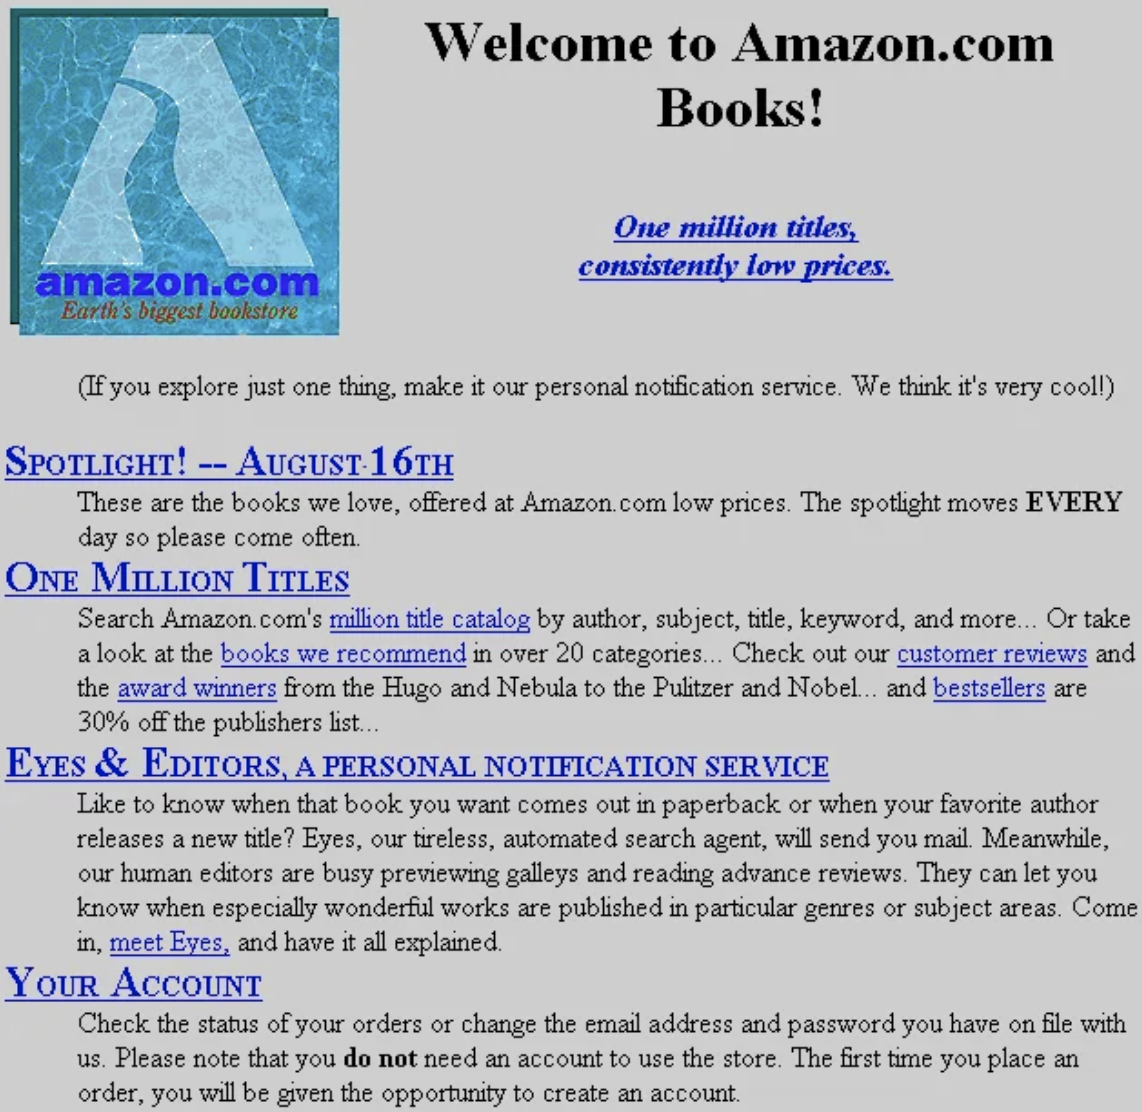 Amazon.com Website  1995  Source  https   www.versionmuseum.com history of amazon website  